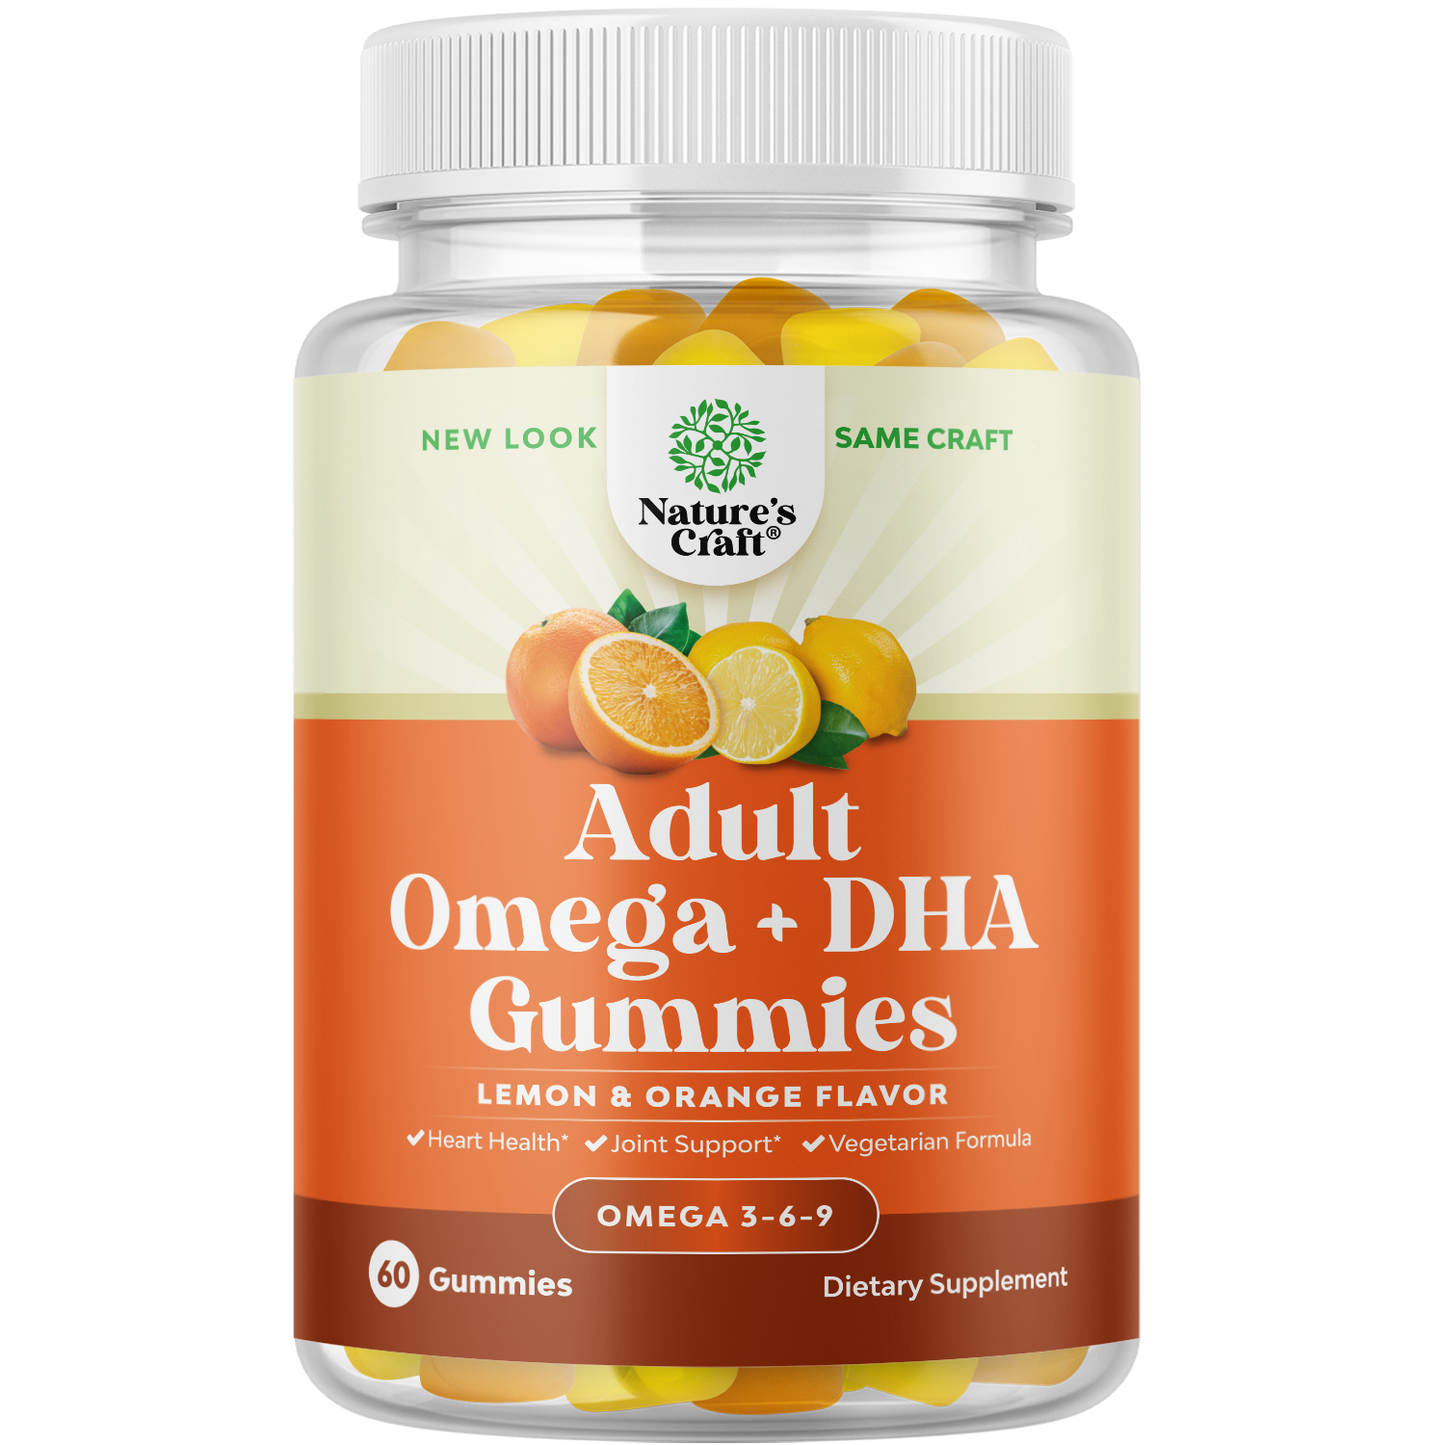 Adult Omega + DHA Gummies - 60 Gummies